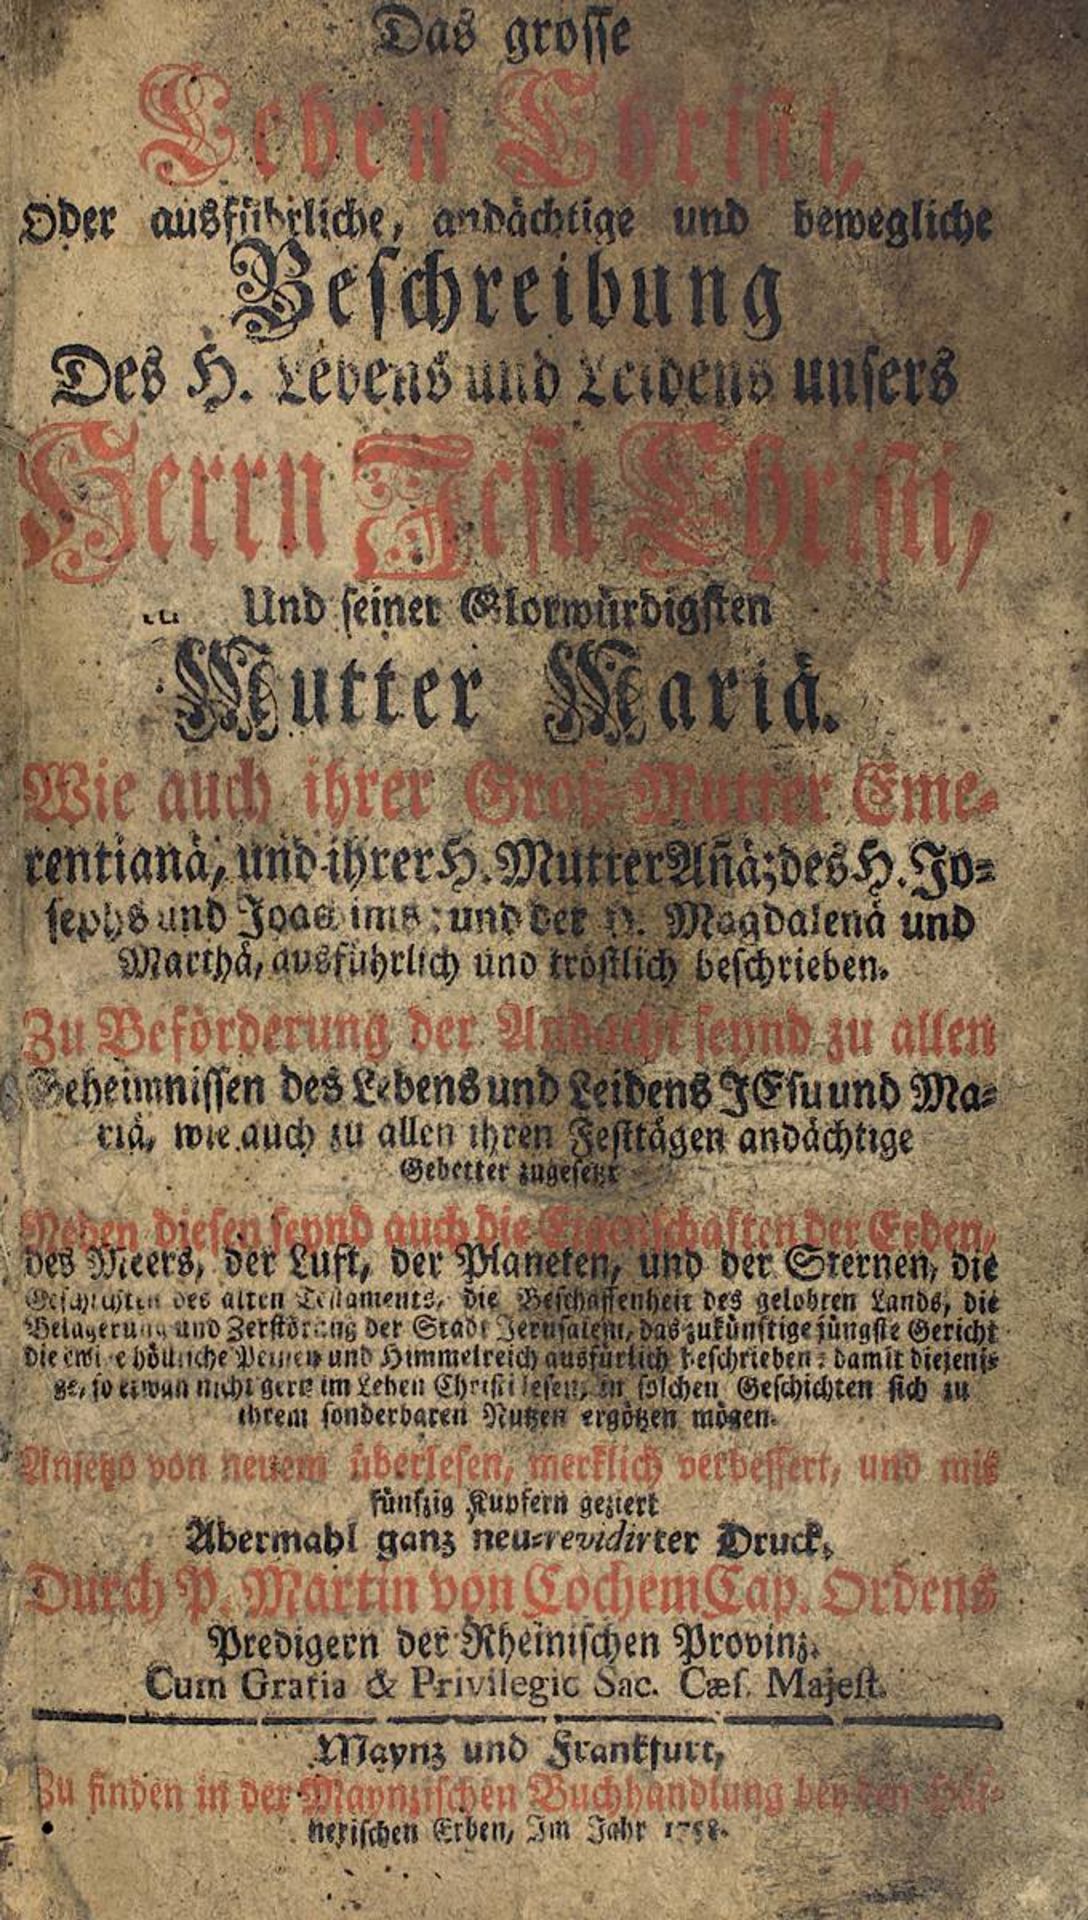 Marin von Cochem "Das große Leben Christi ... u. seiner glorwürdigen Mutter Maria ...", Mainz u.